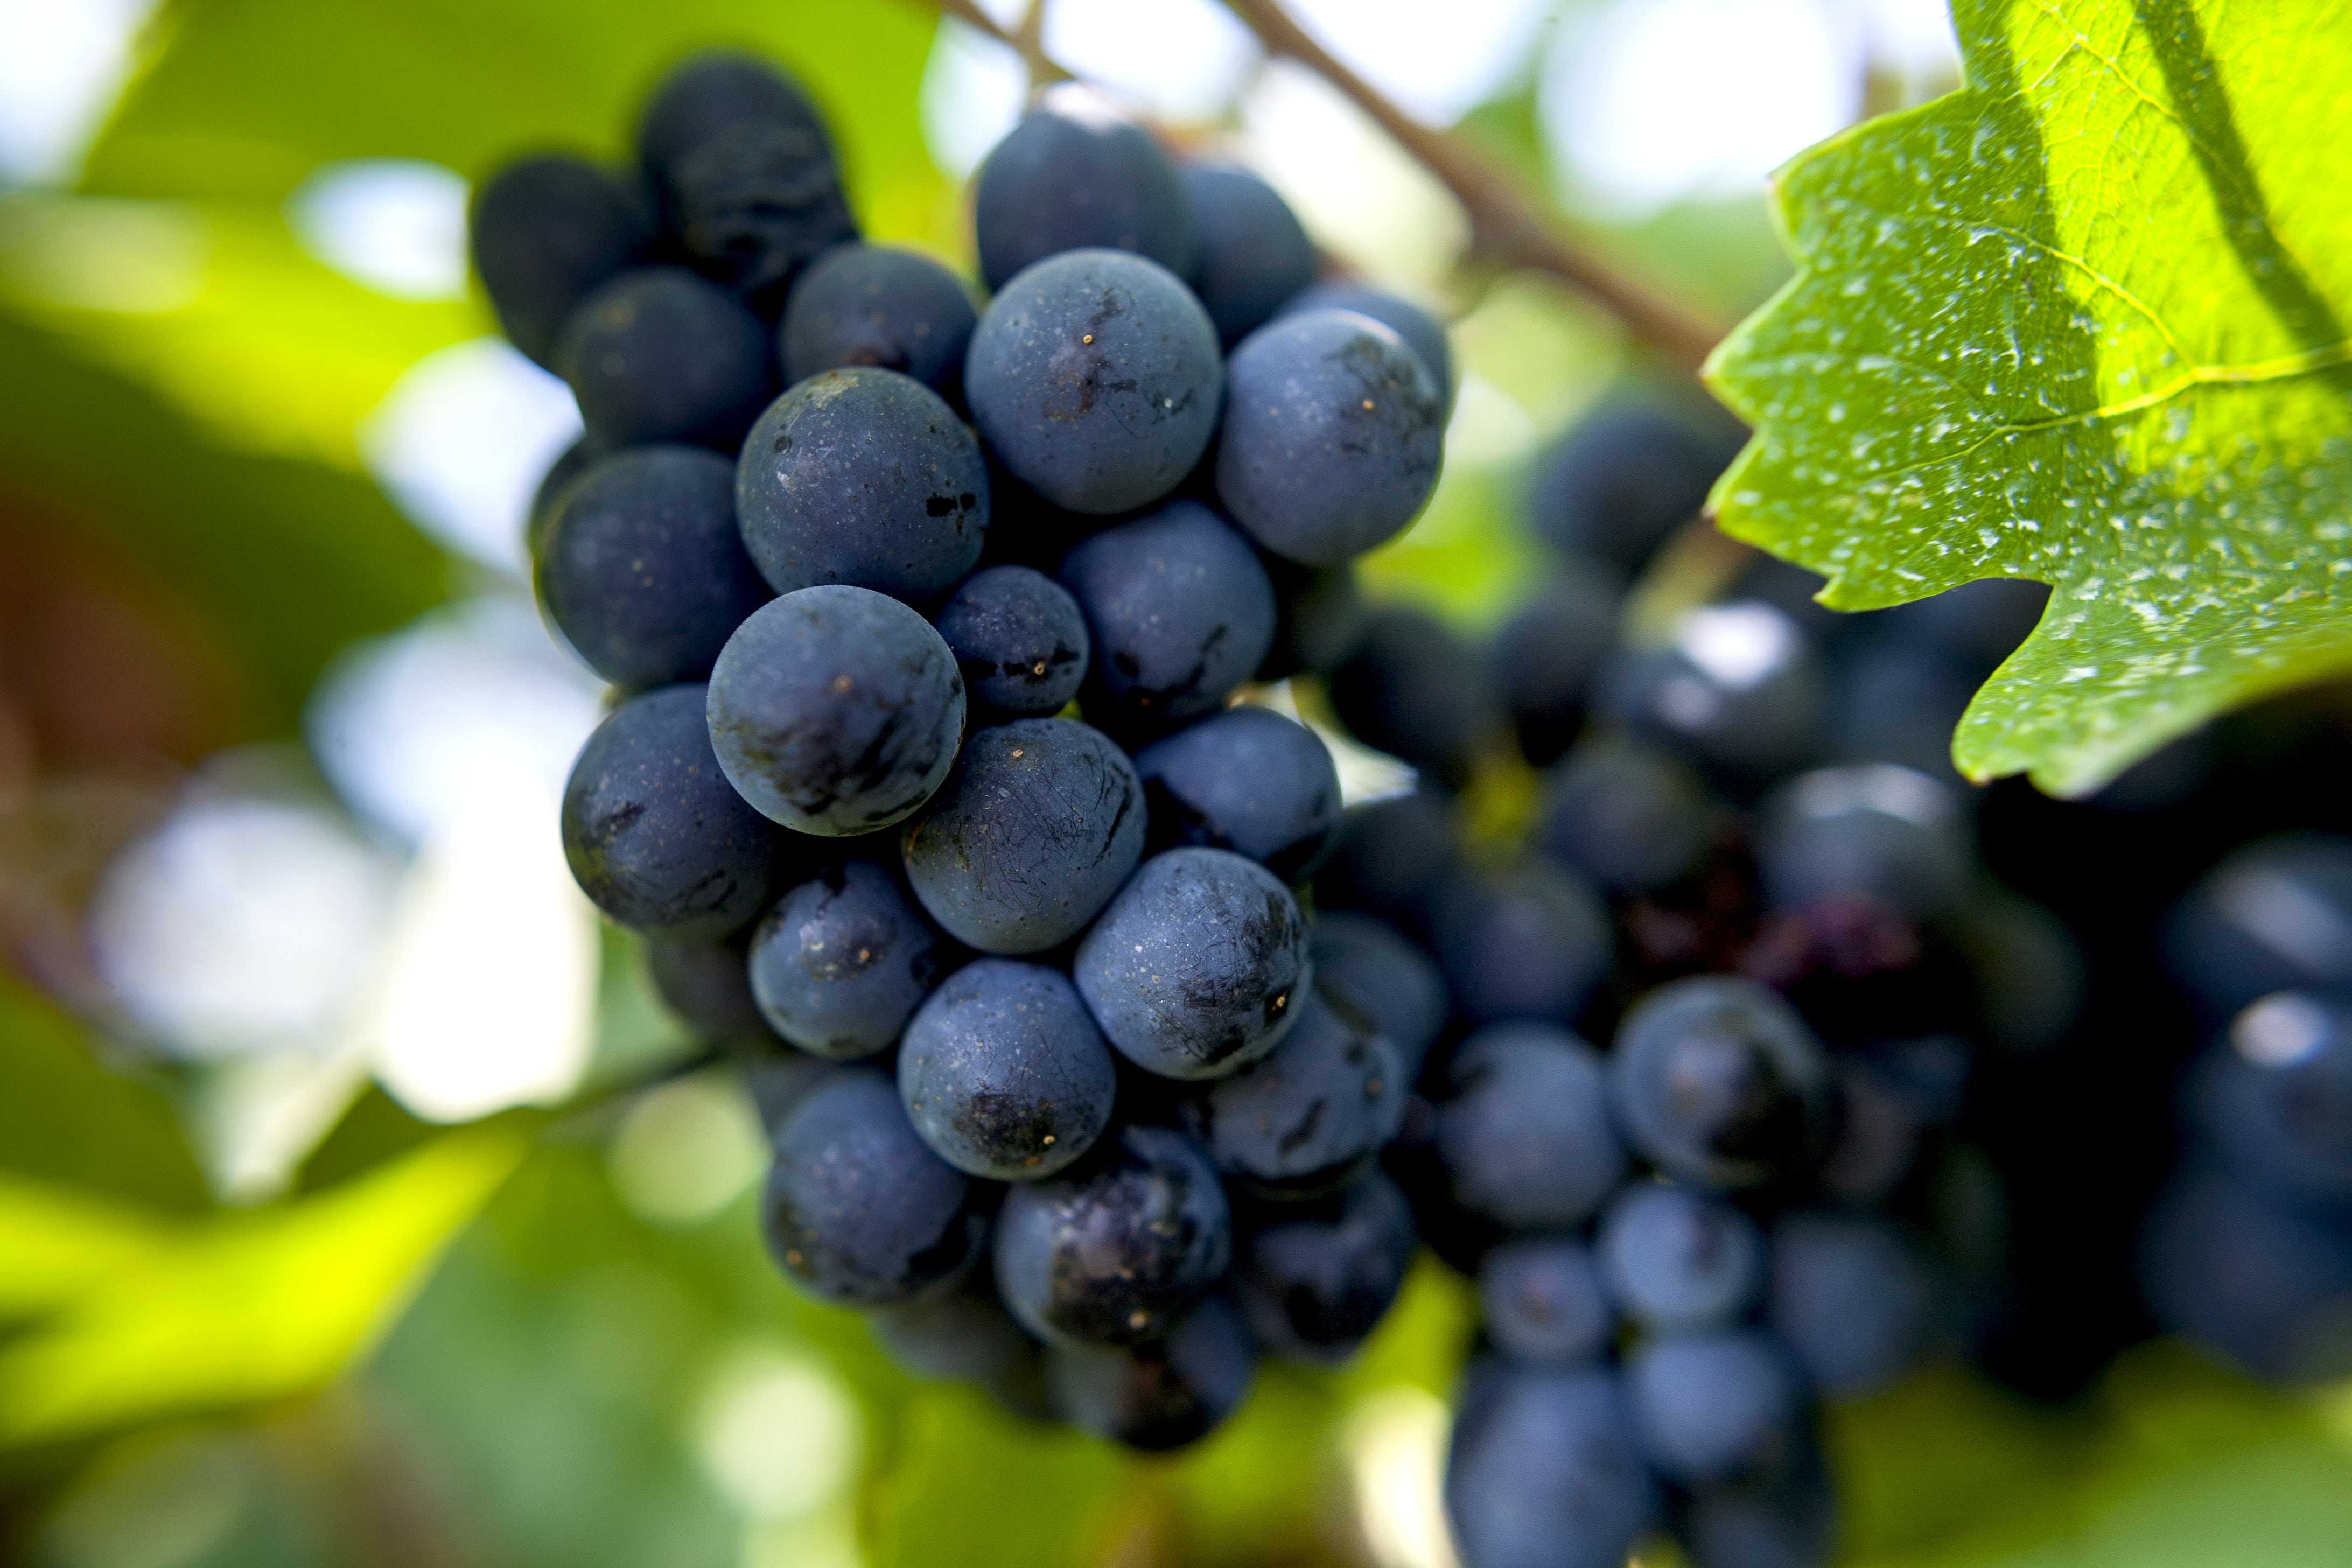 Виноград пино нуар: селекция, описание, посадка и уход, достоинства, известные вина, отзывы